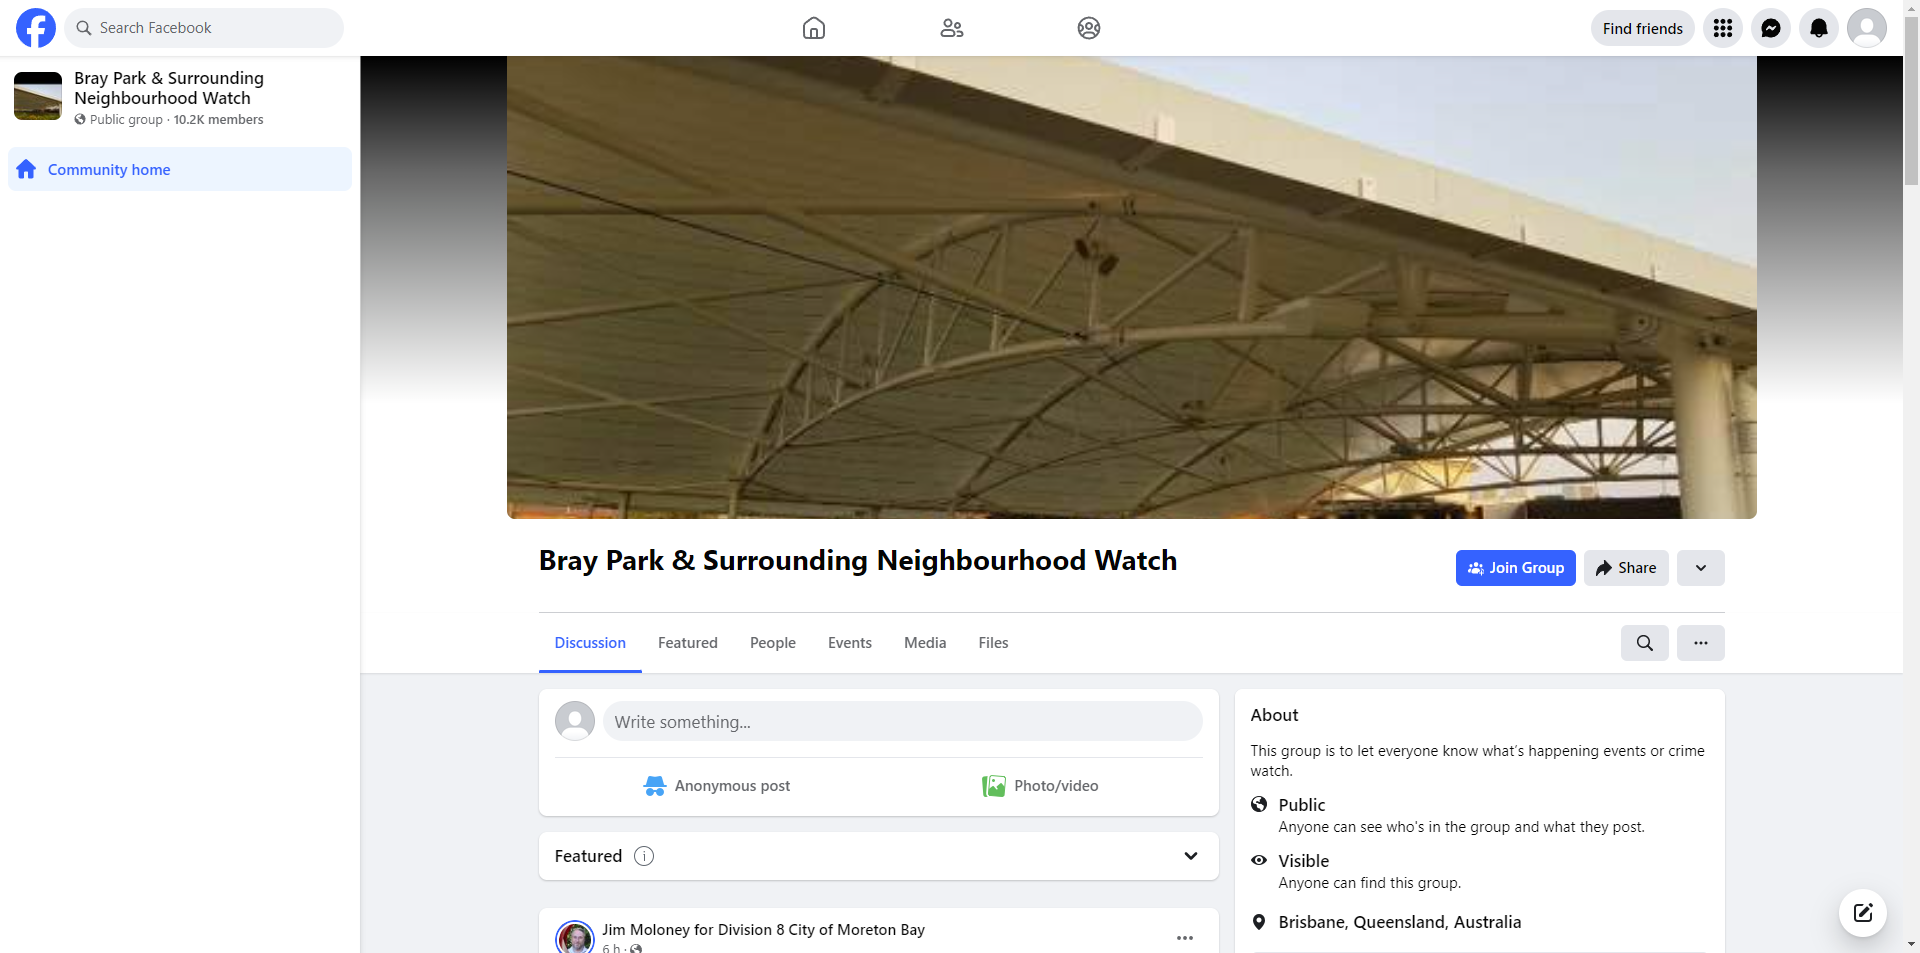 Bray Park & Surrounding Neighbourhood Watch